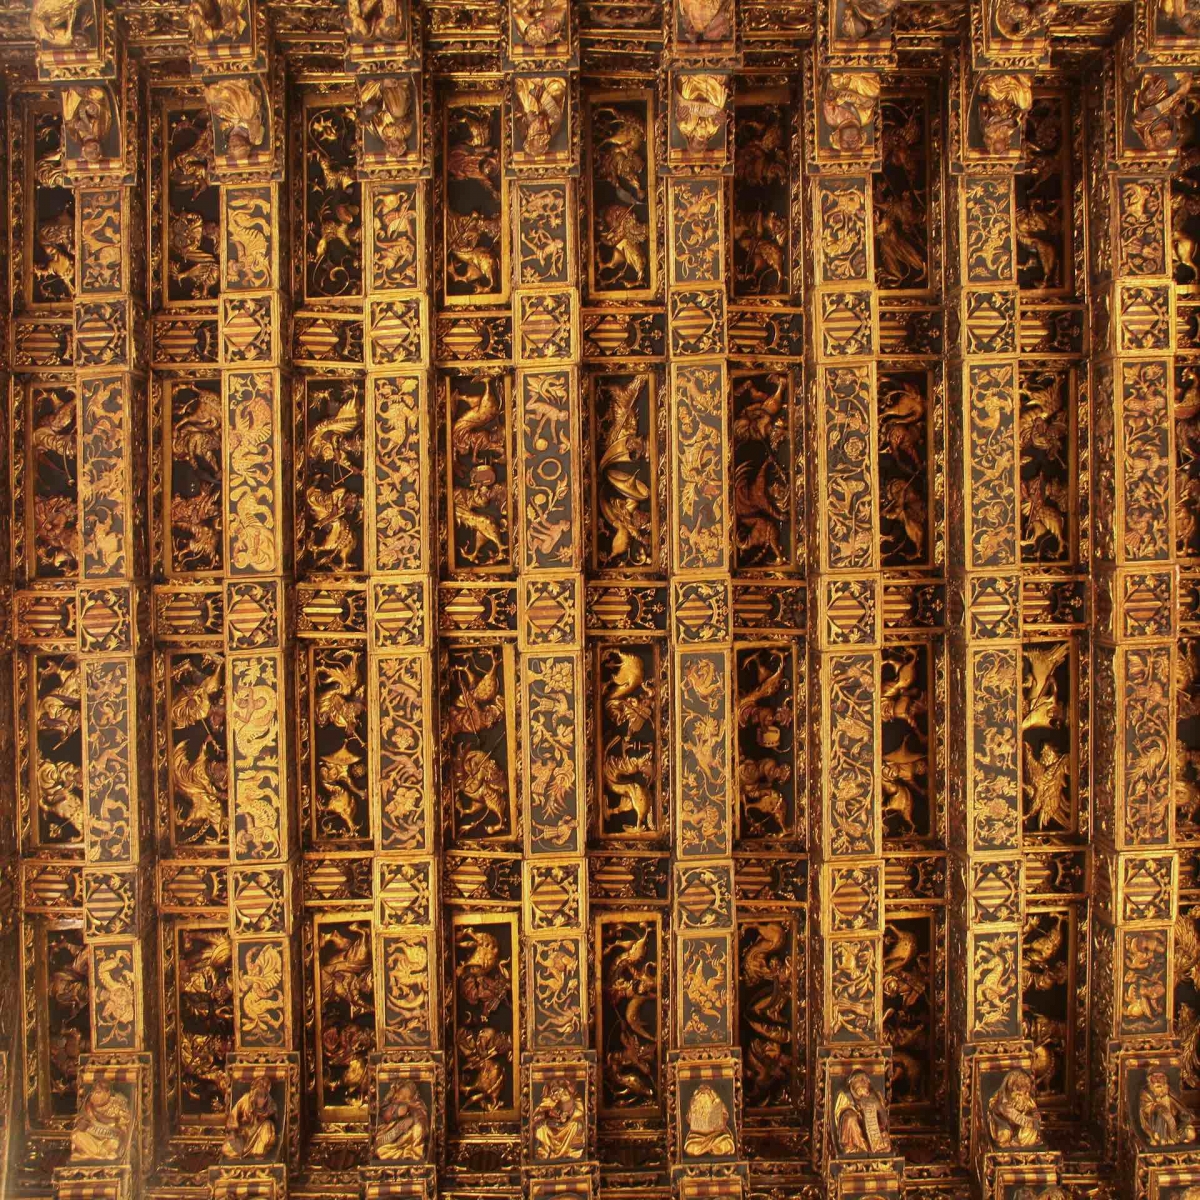 Gothic style ceiling in Lonha de la Seda